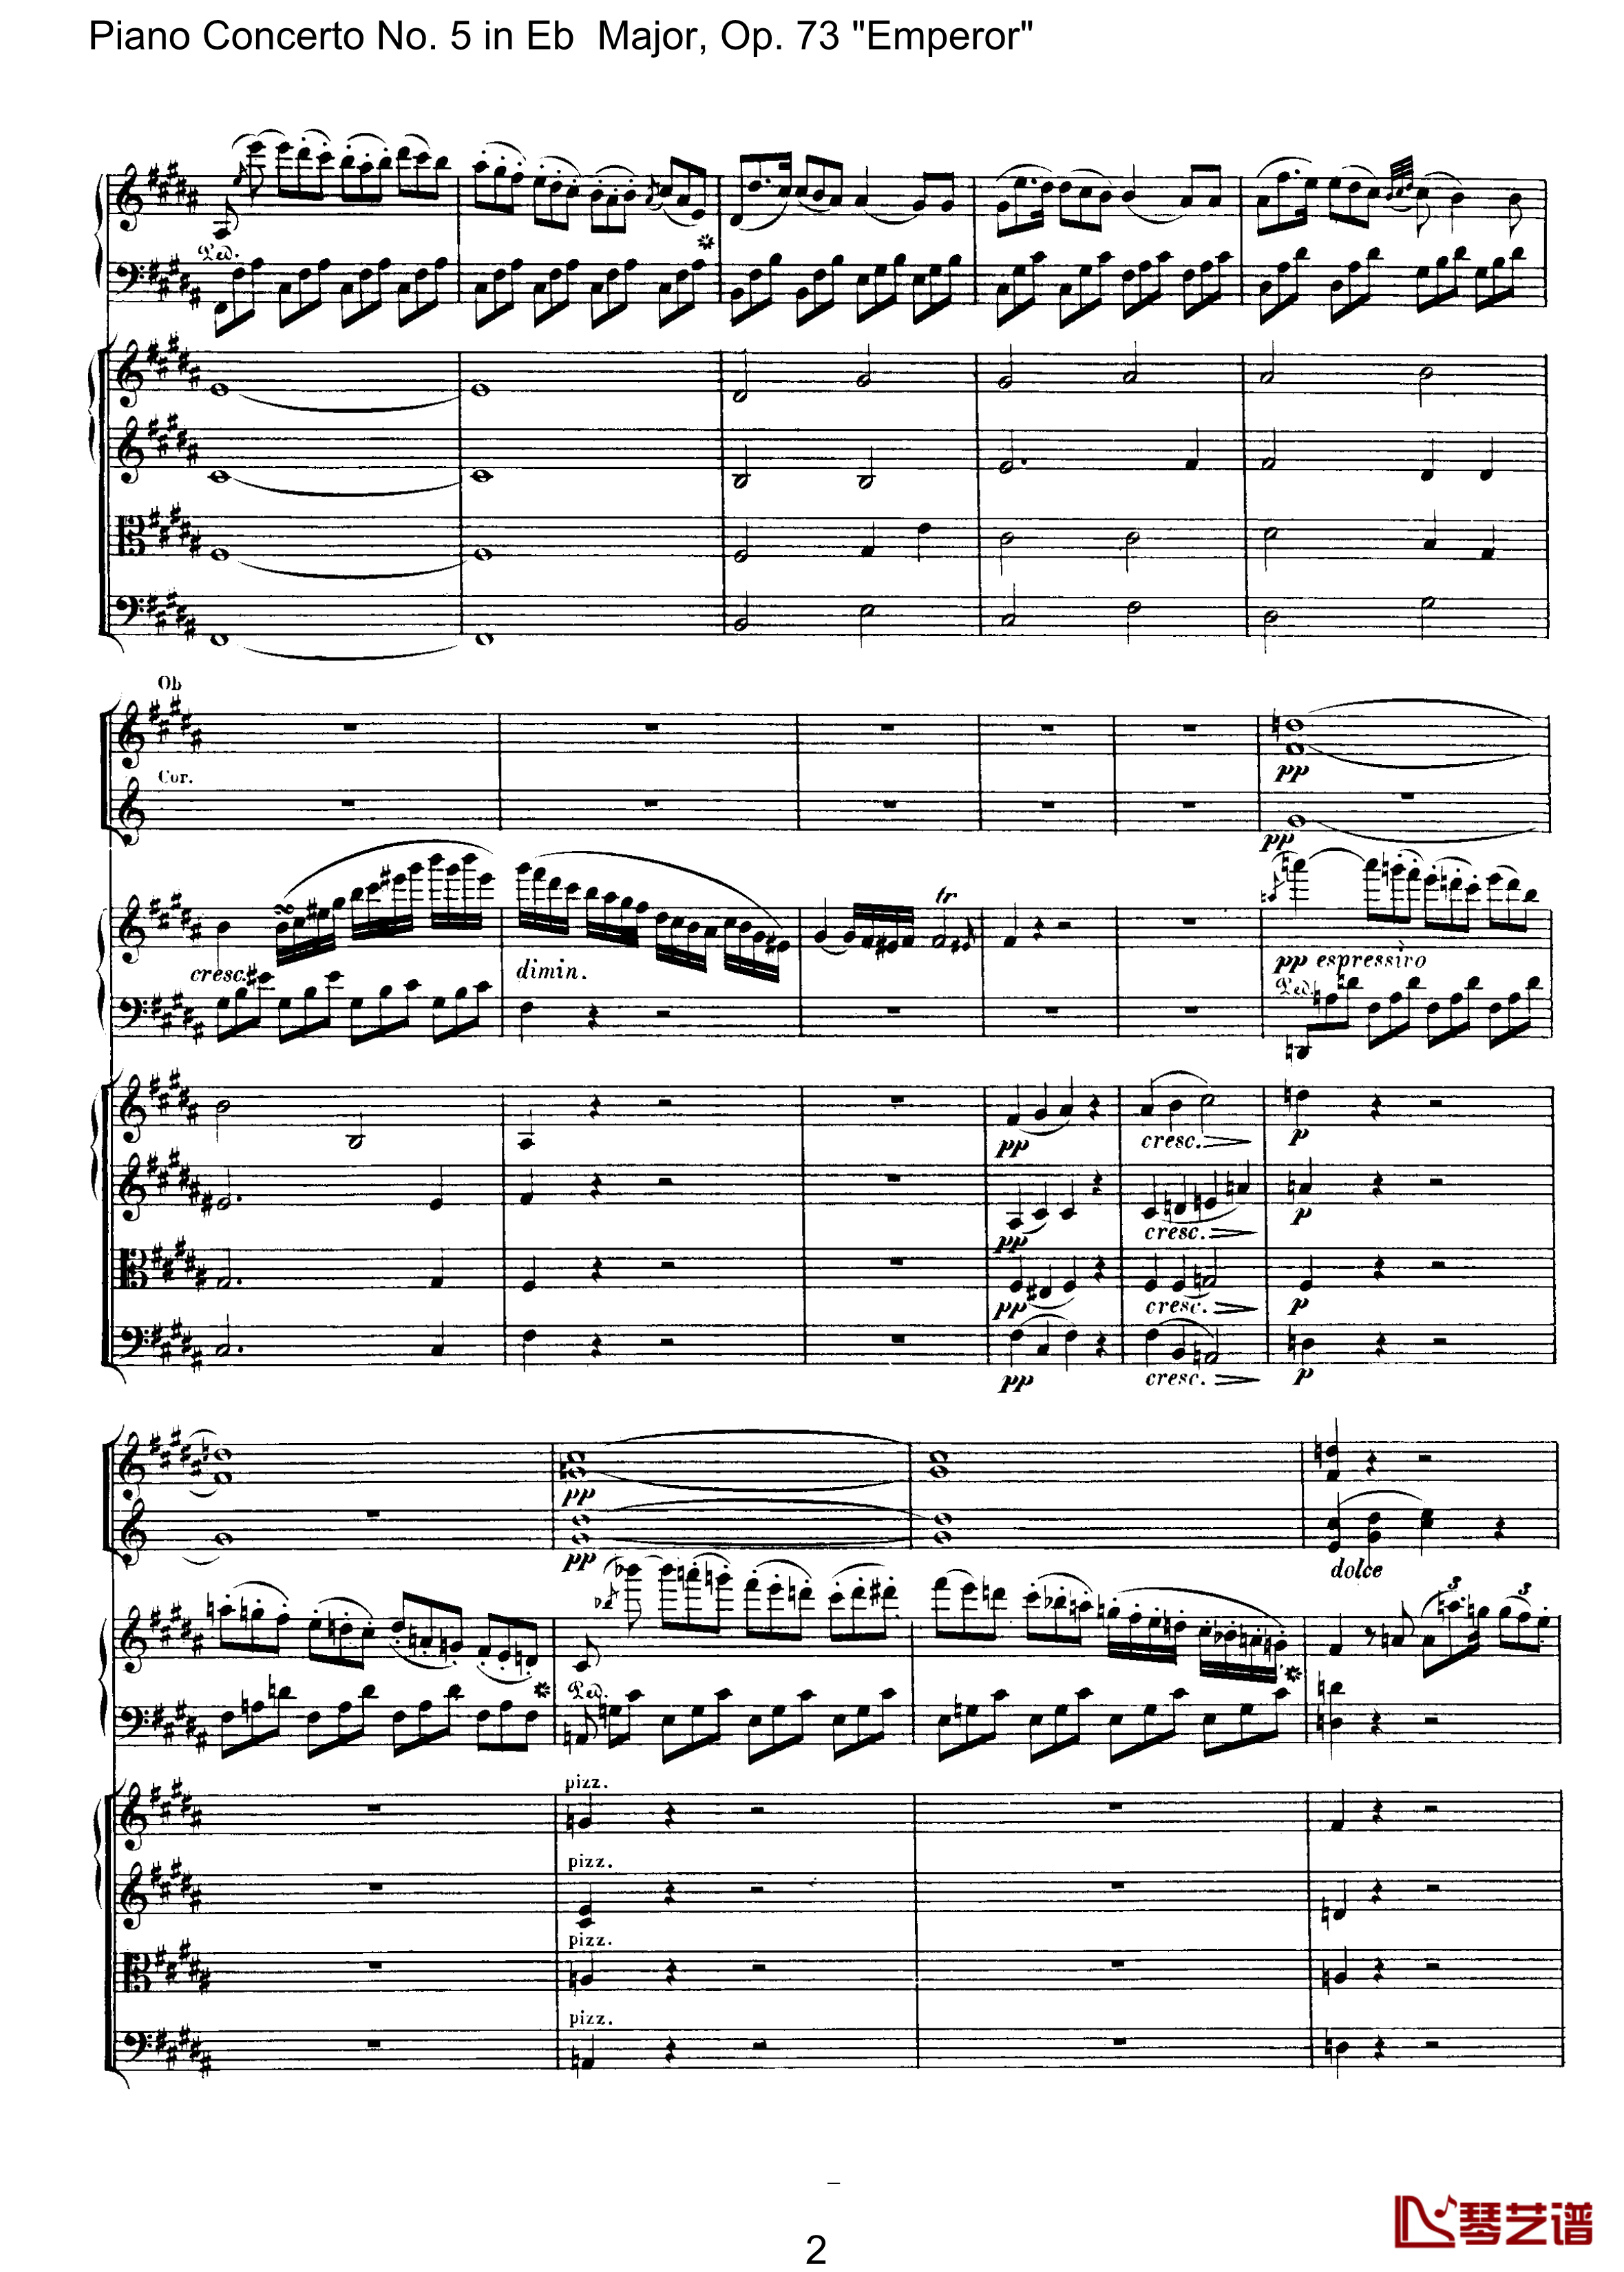 皇帝第二乐章钢琴谱-贝多芬-总谱-第五钢琴协奏曲beethoven2